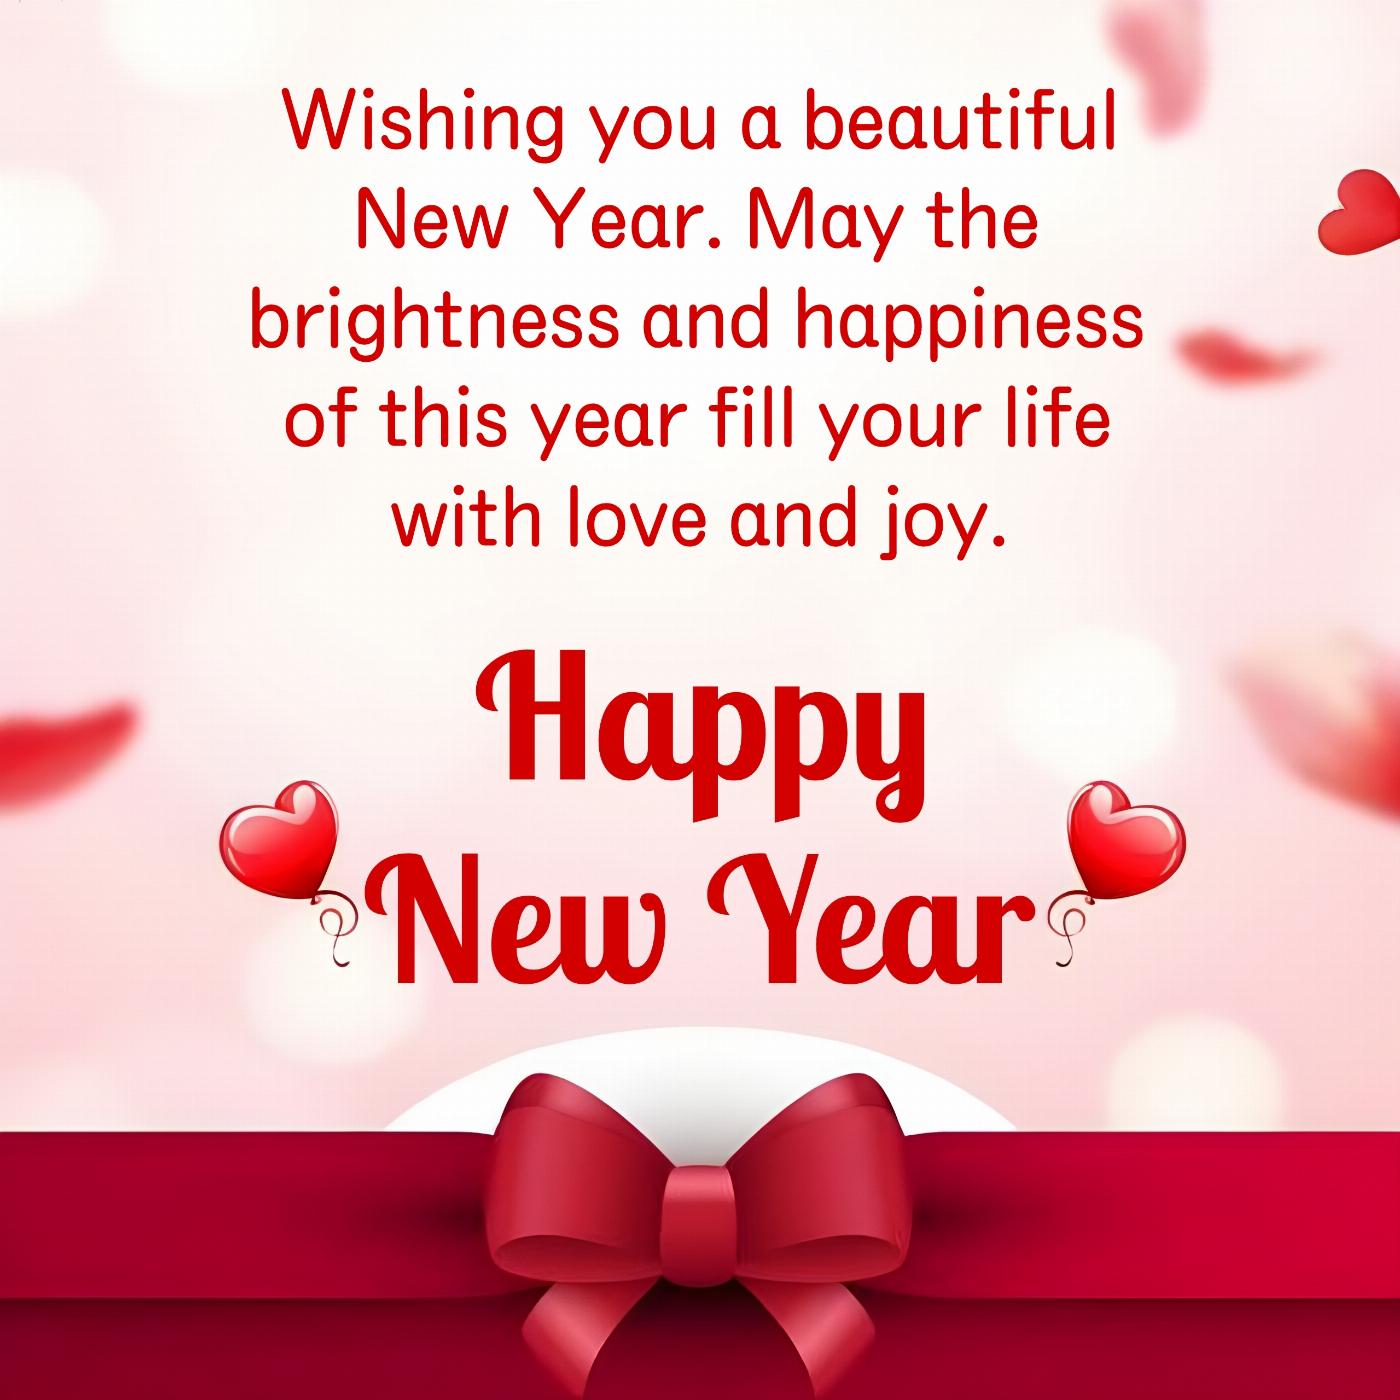 Wishing you a beautiful New Year